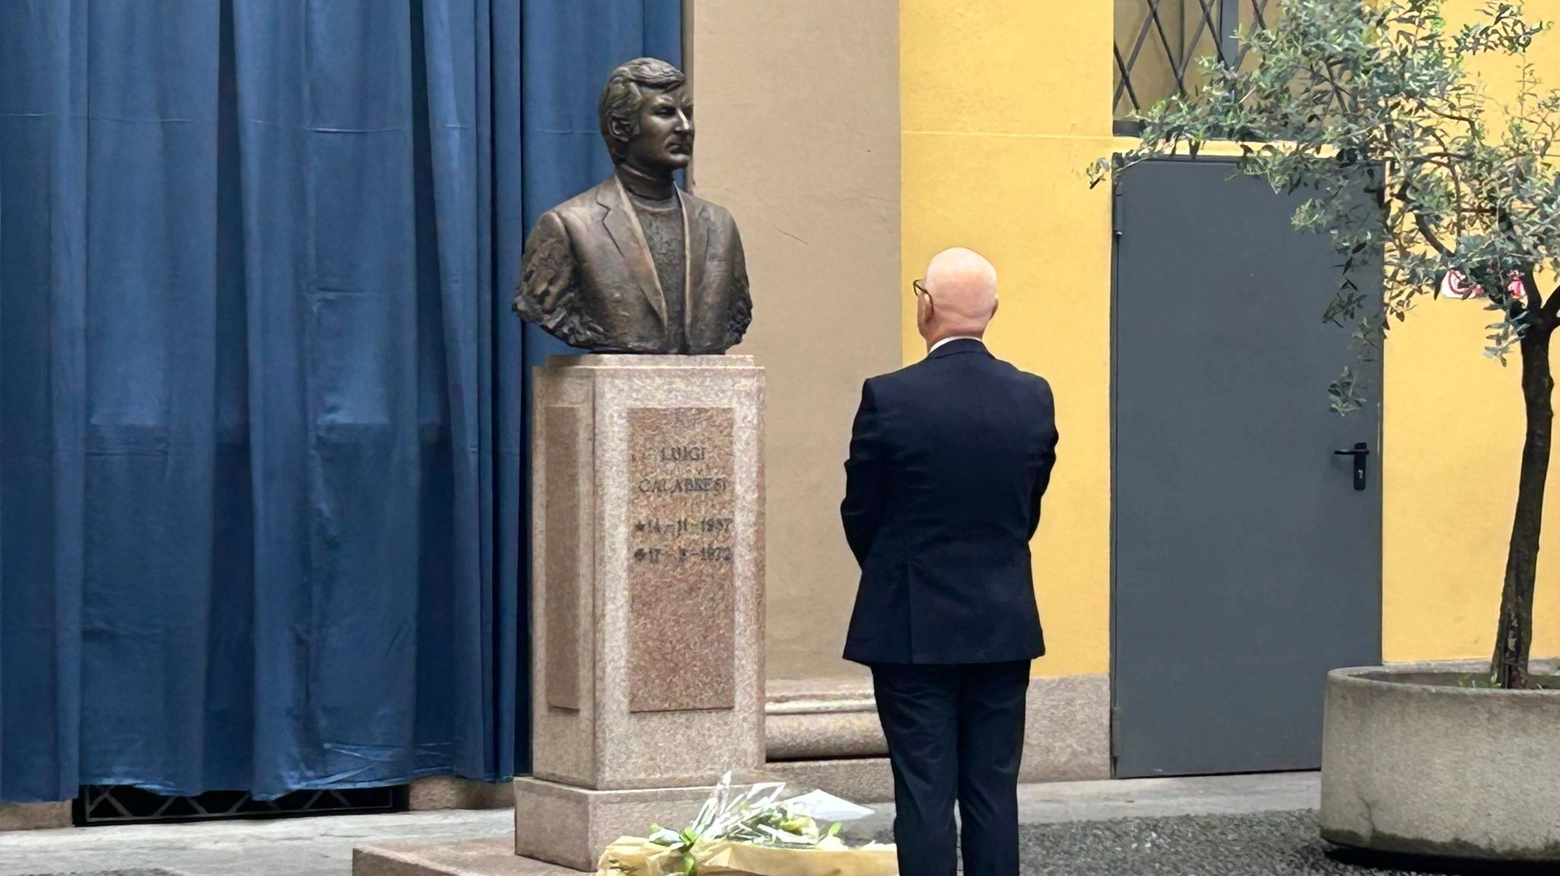 Il questore di Milano Giuseppe Petronzi ha commemorato i caduti della polizia di Stato e il commissario Calabresi, sul cui busto è stato adagiato un mazzo di fiori